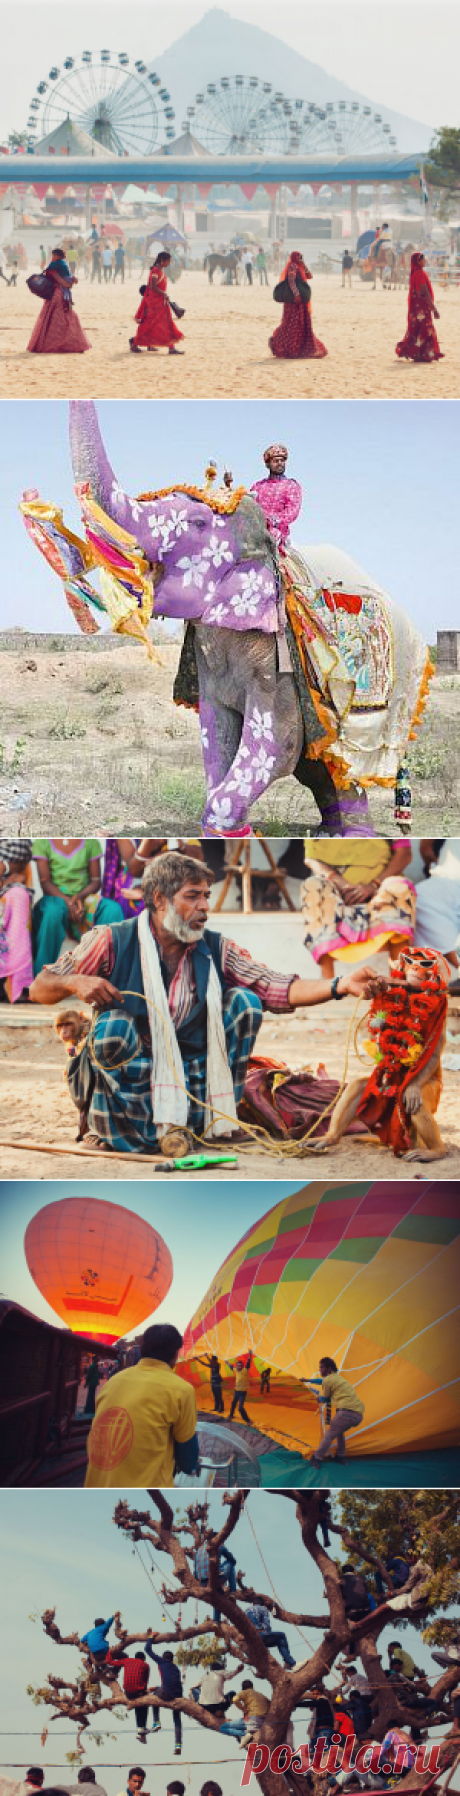 Ярмарка верблюдов
Каждый год в индийском городе Пушкар штата Раджастан проходит ярмарка верблюдов. Она проводится в ноябре и совпадает с празднованием индуистского религиозного праздника Картик Пурнима. Здесь собираются десятки тысяч кочевников, и со всех концов страны торговцы привозят более 25 тысяч знаменитых дромадеров.